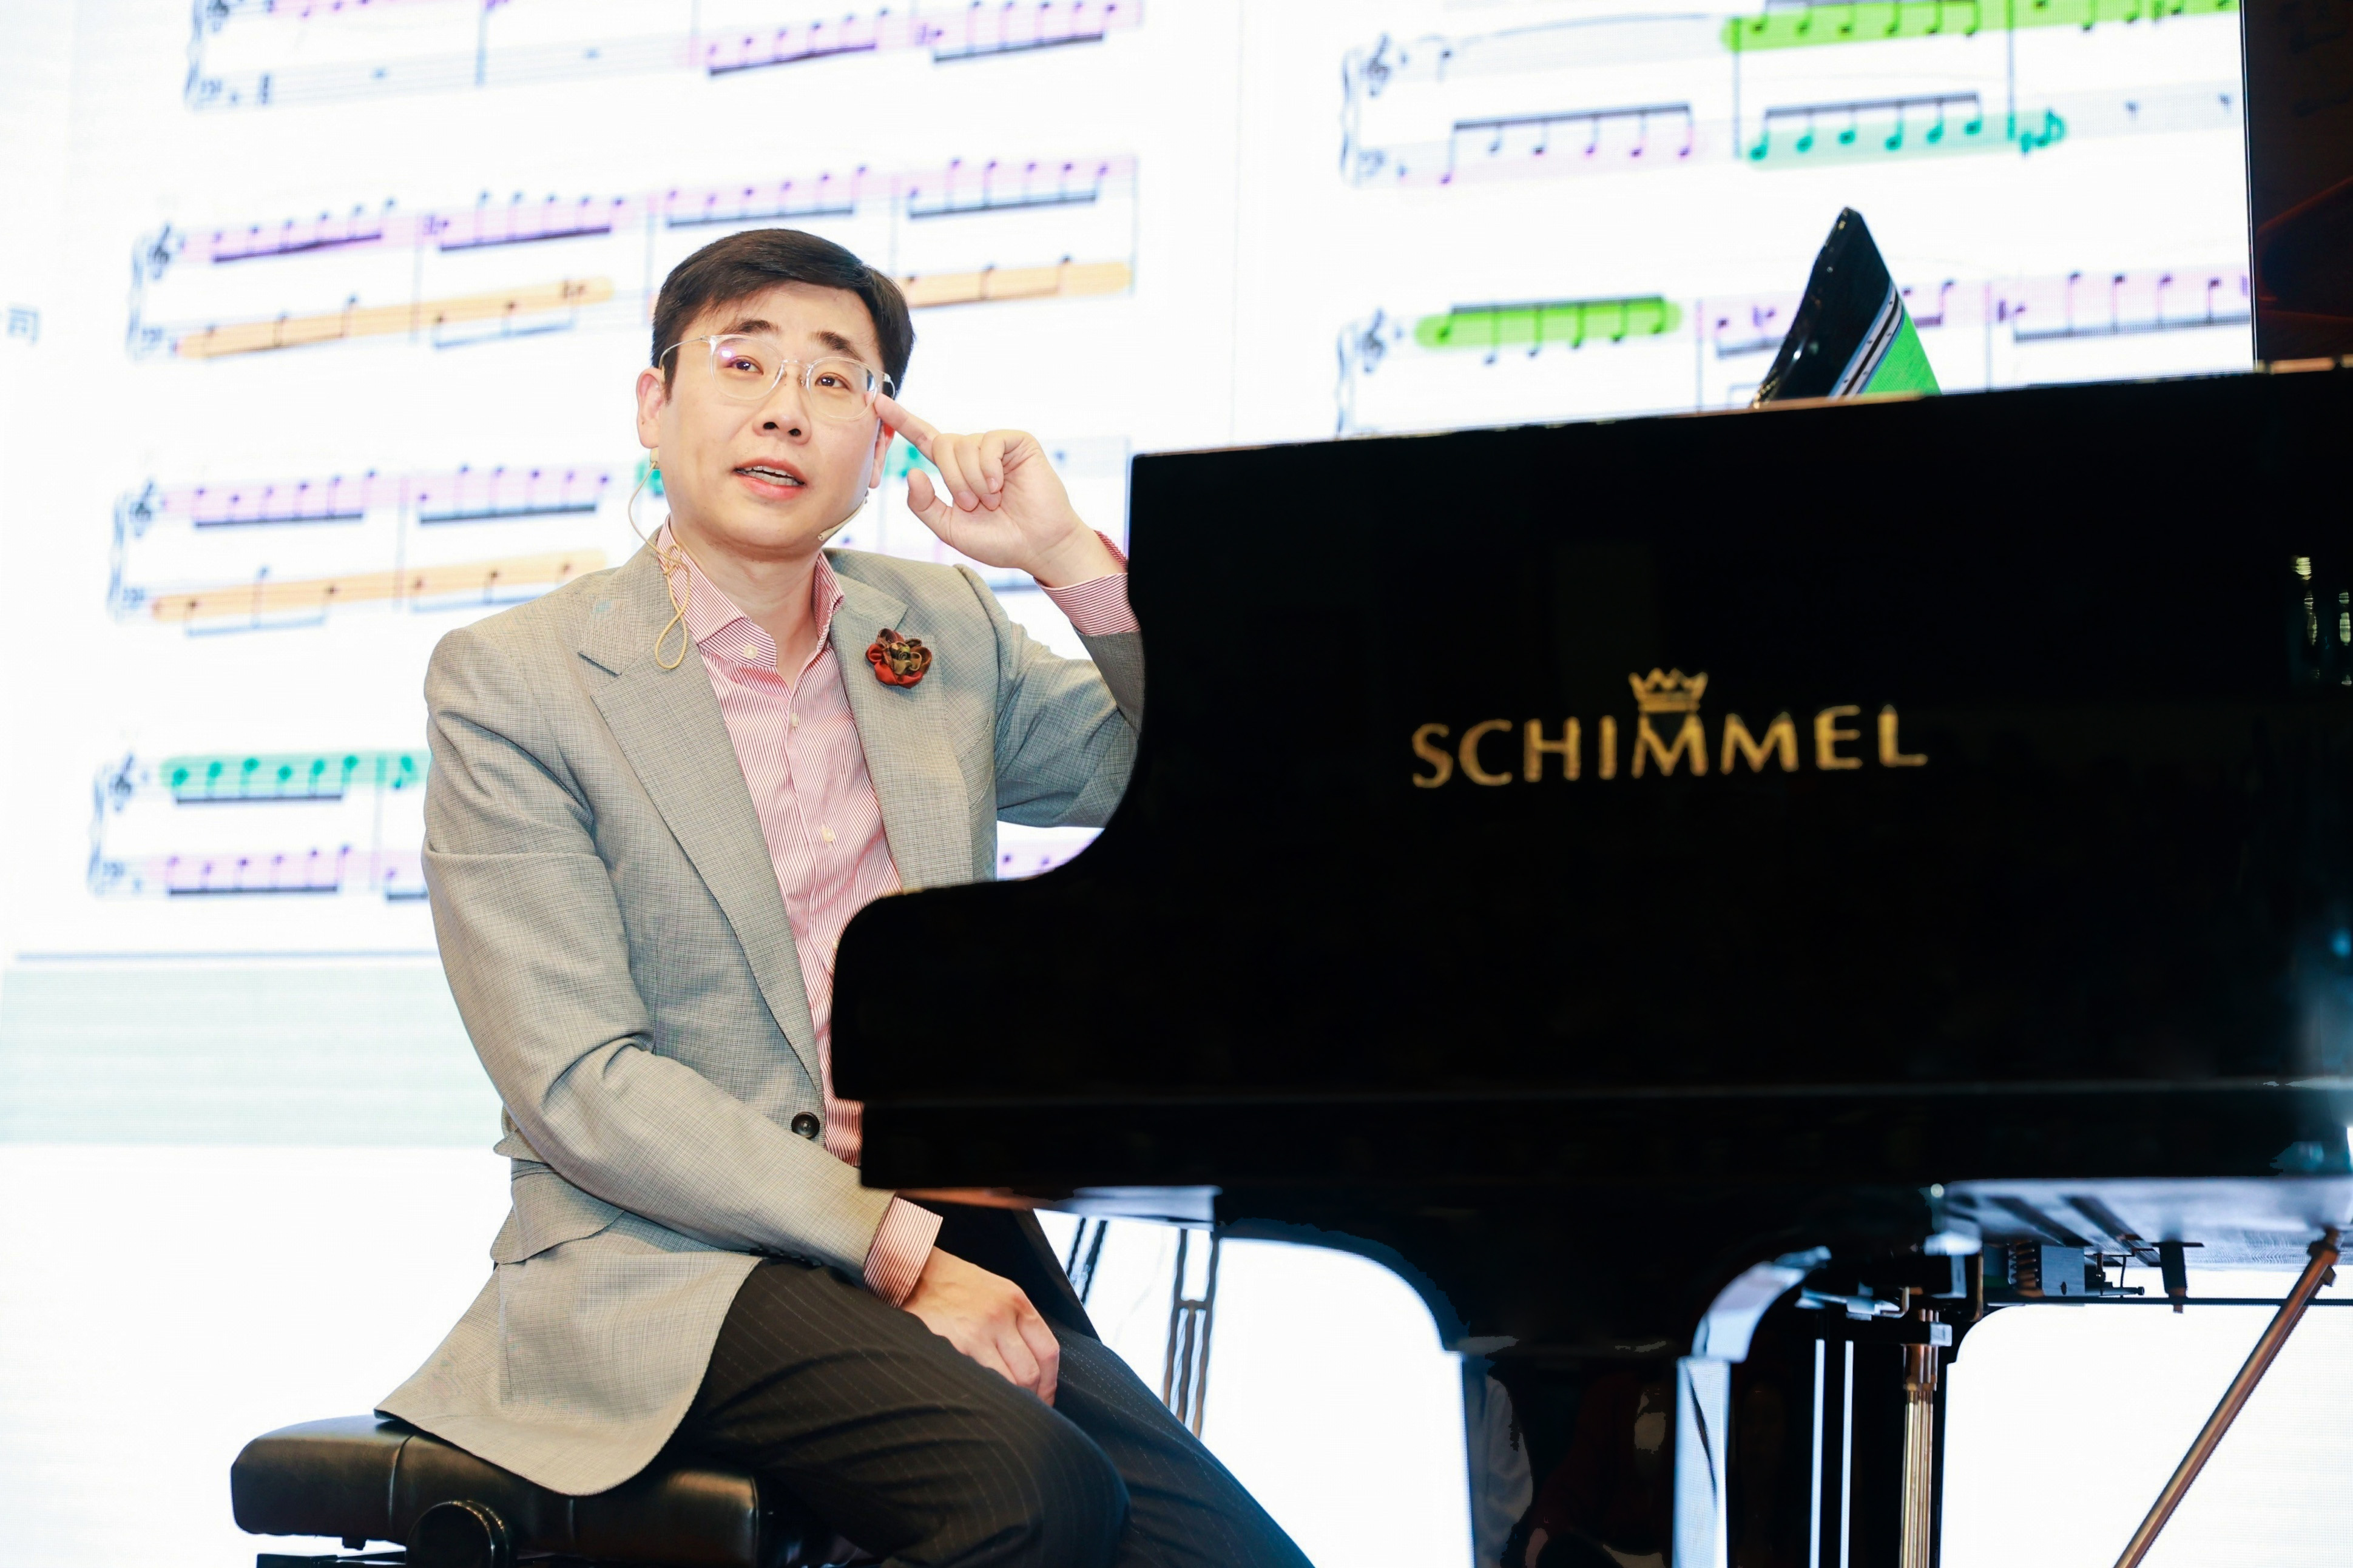 舒密尔钢琴助力全球音乐教育联盟第二届系列活动